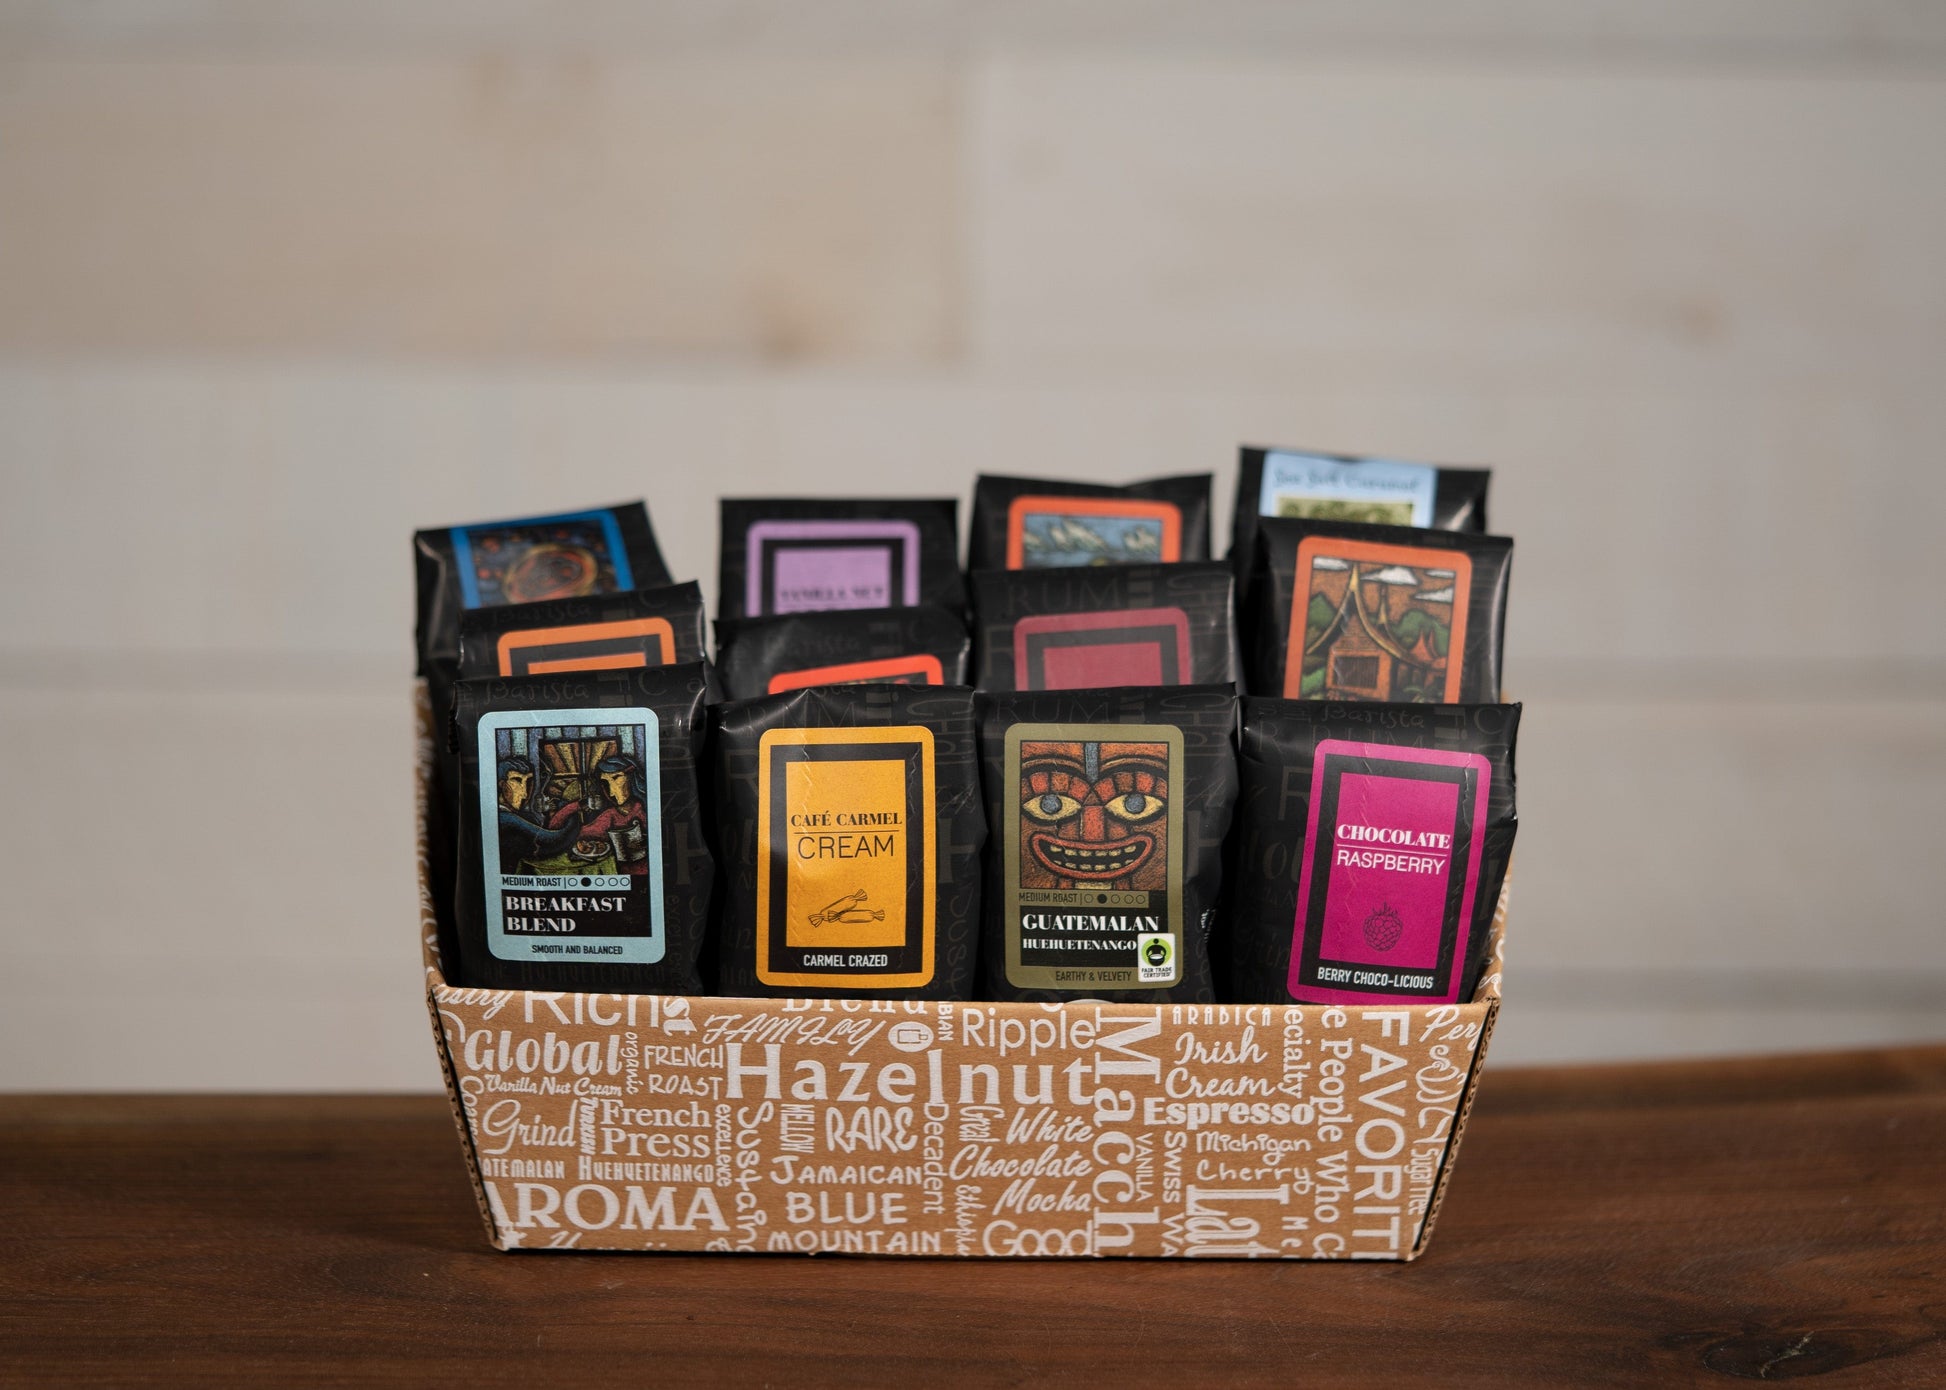 Indulgent Selection Coffee Gift Box *